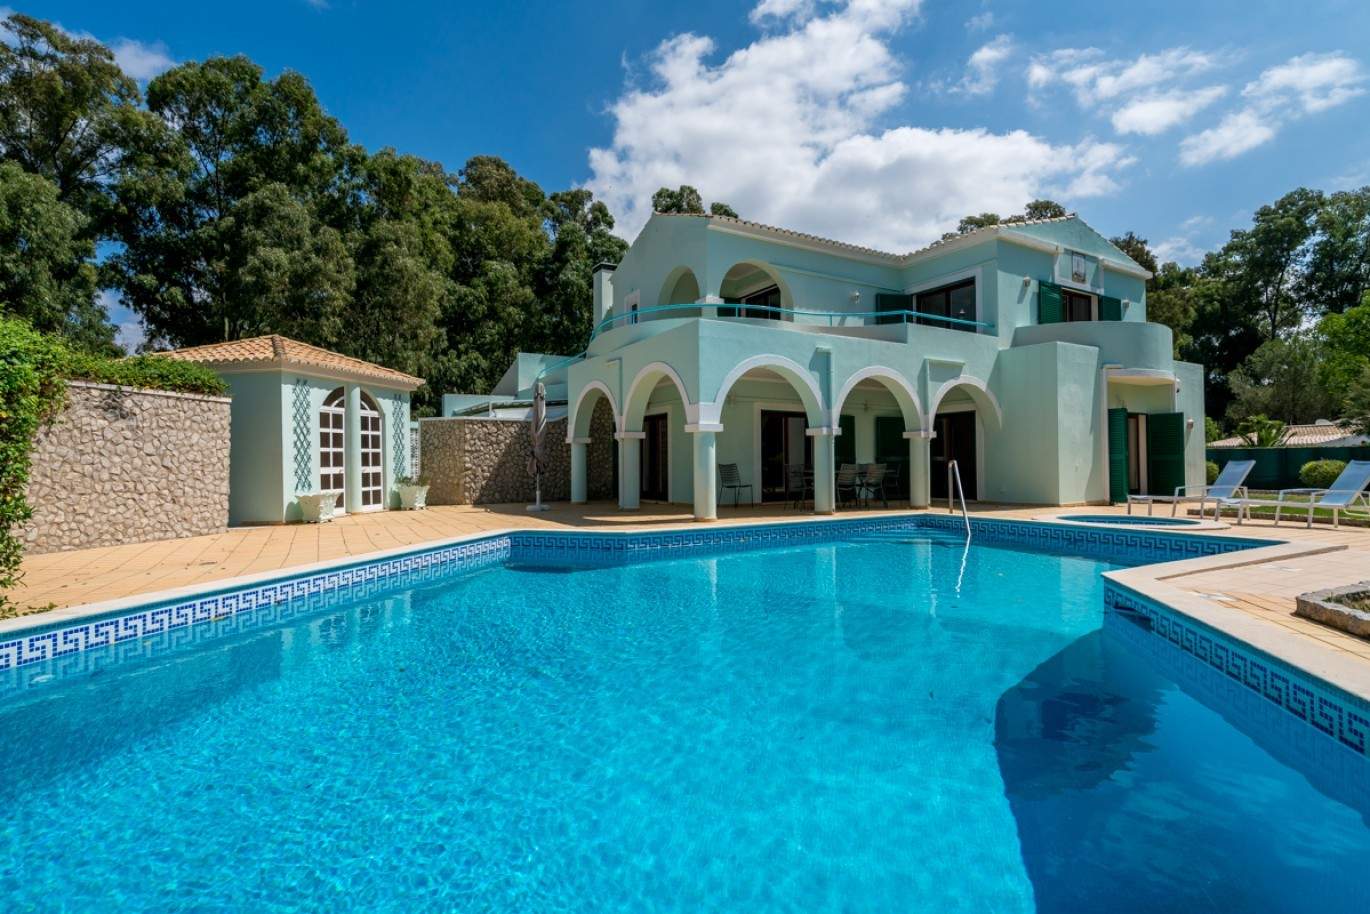 Verkauf Villa mit pool und Garten in Penina Alvor, Algarve, Portugal_83422